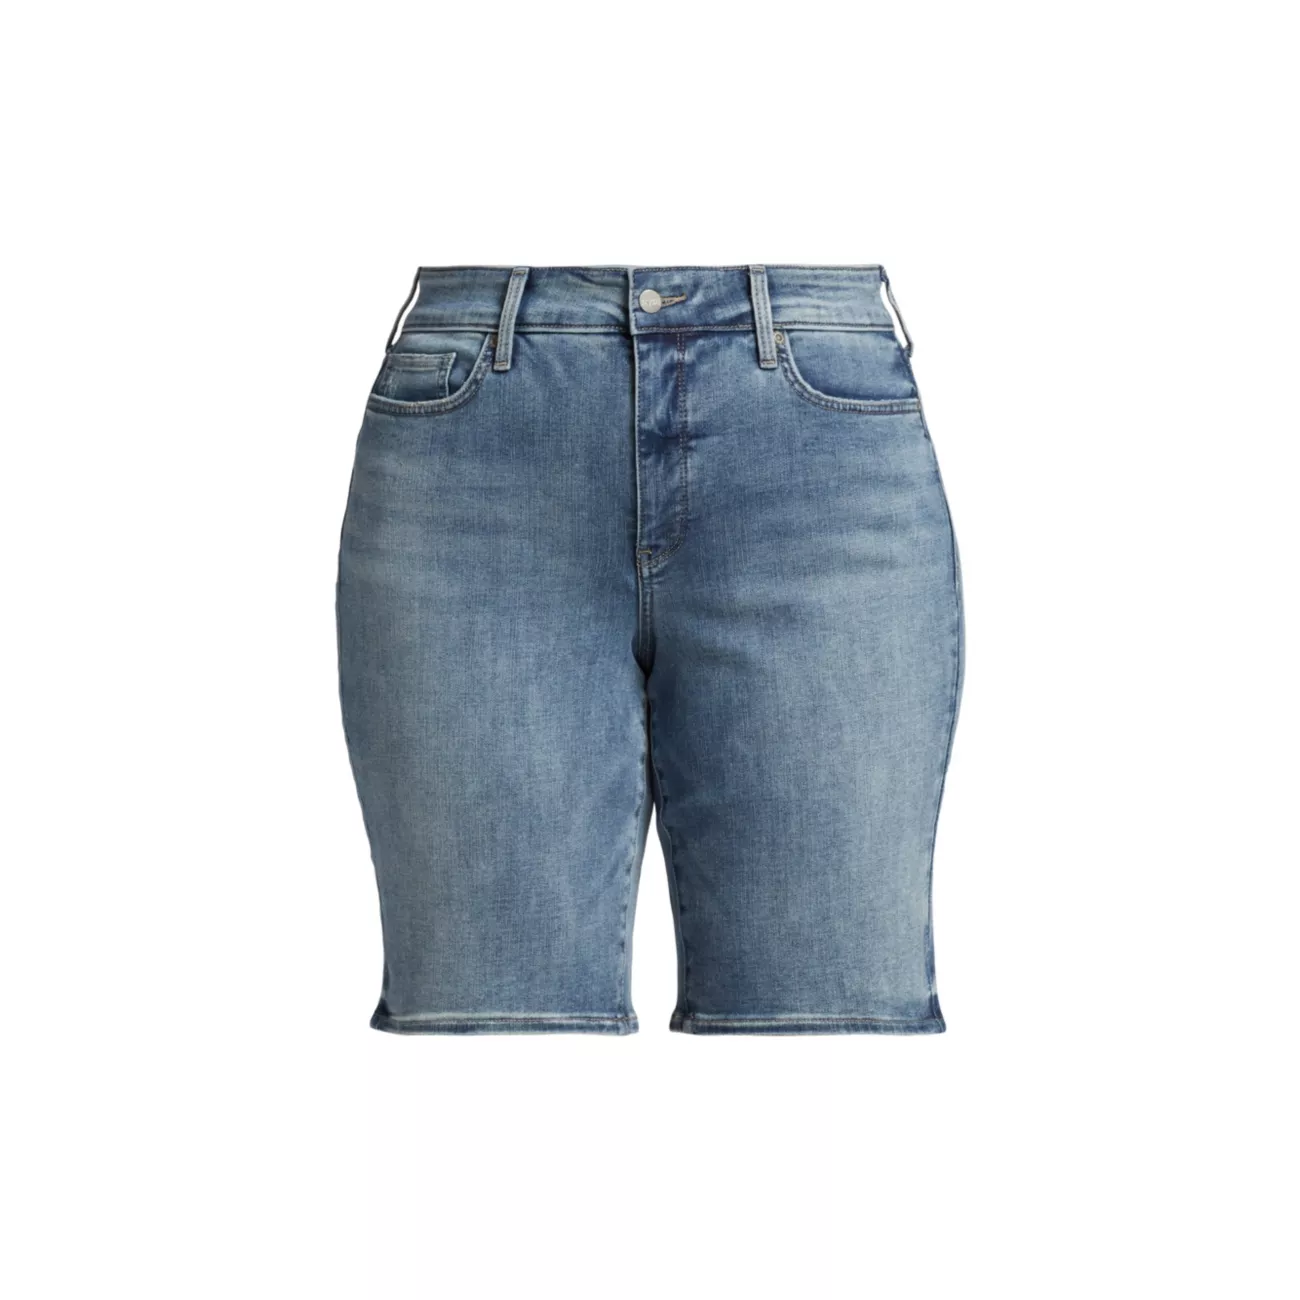 Эластичные джинсовые шорты до колен Briella NYDJ